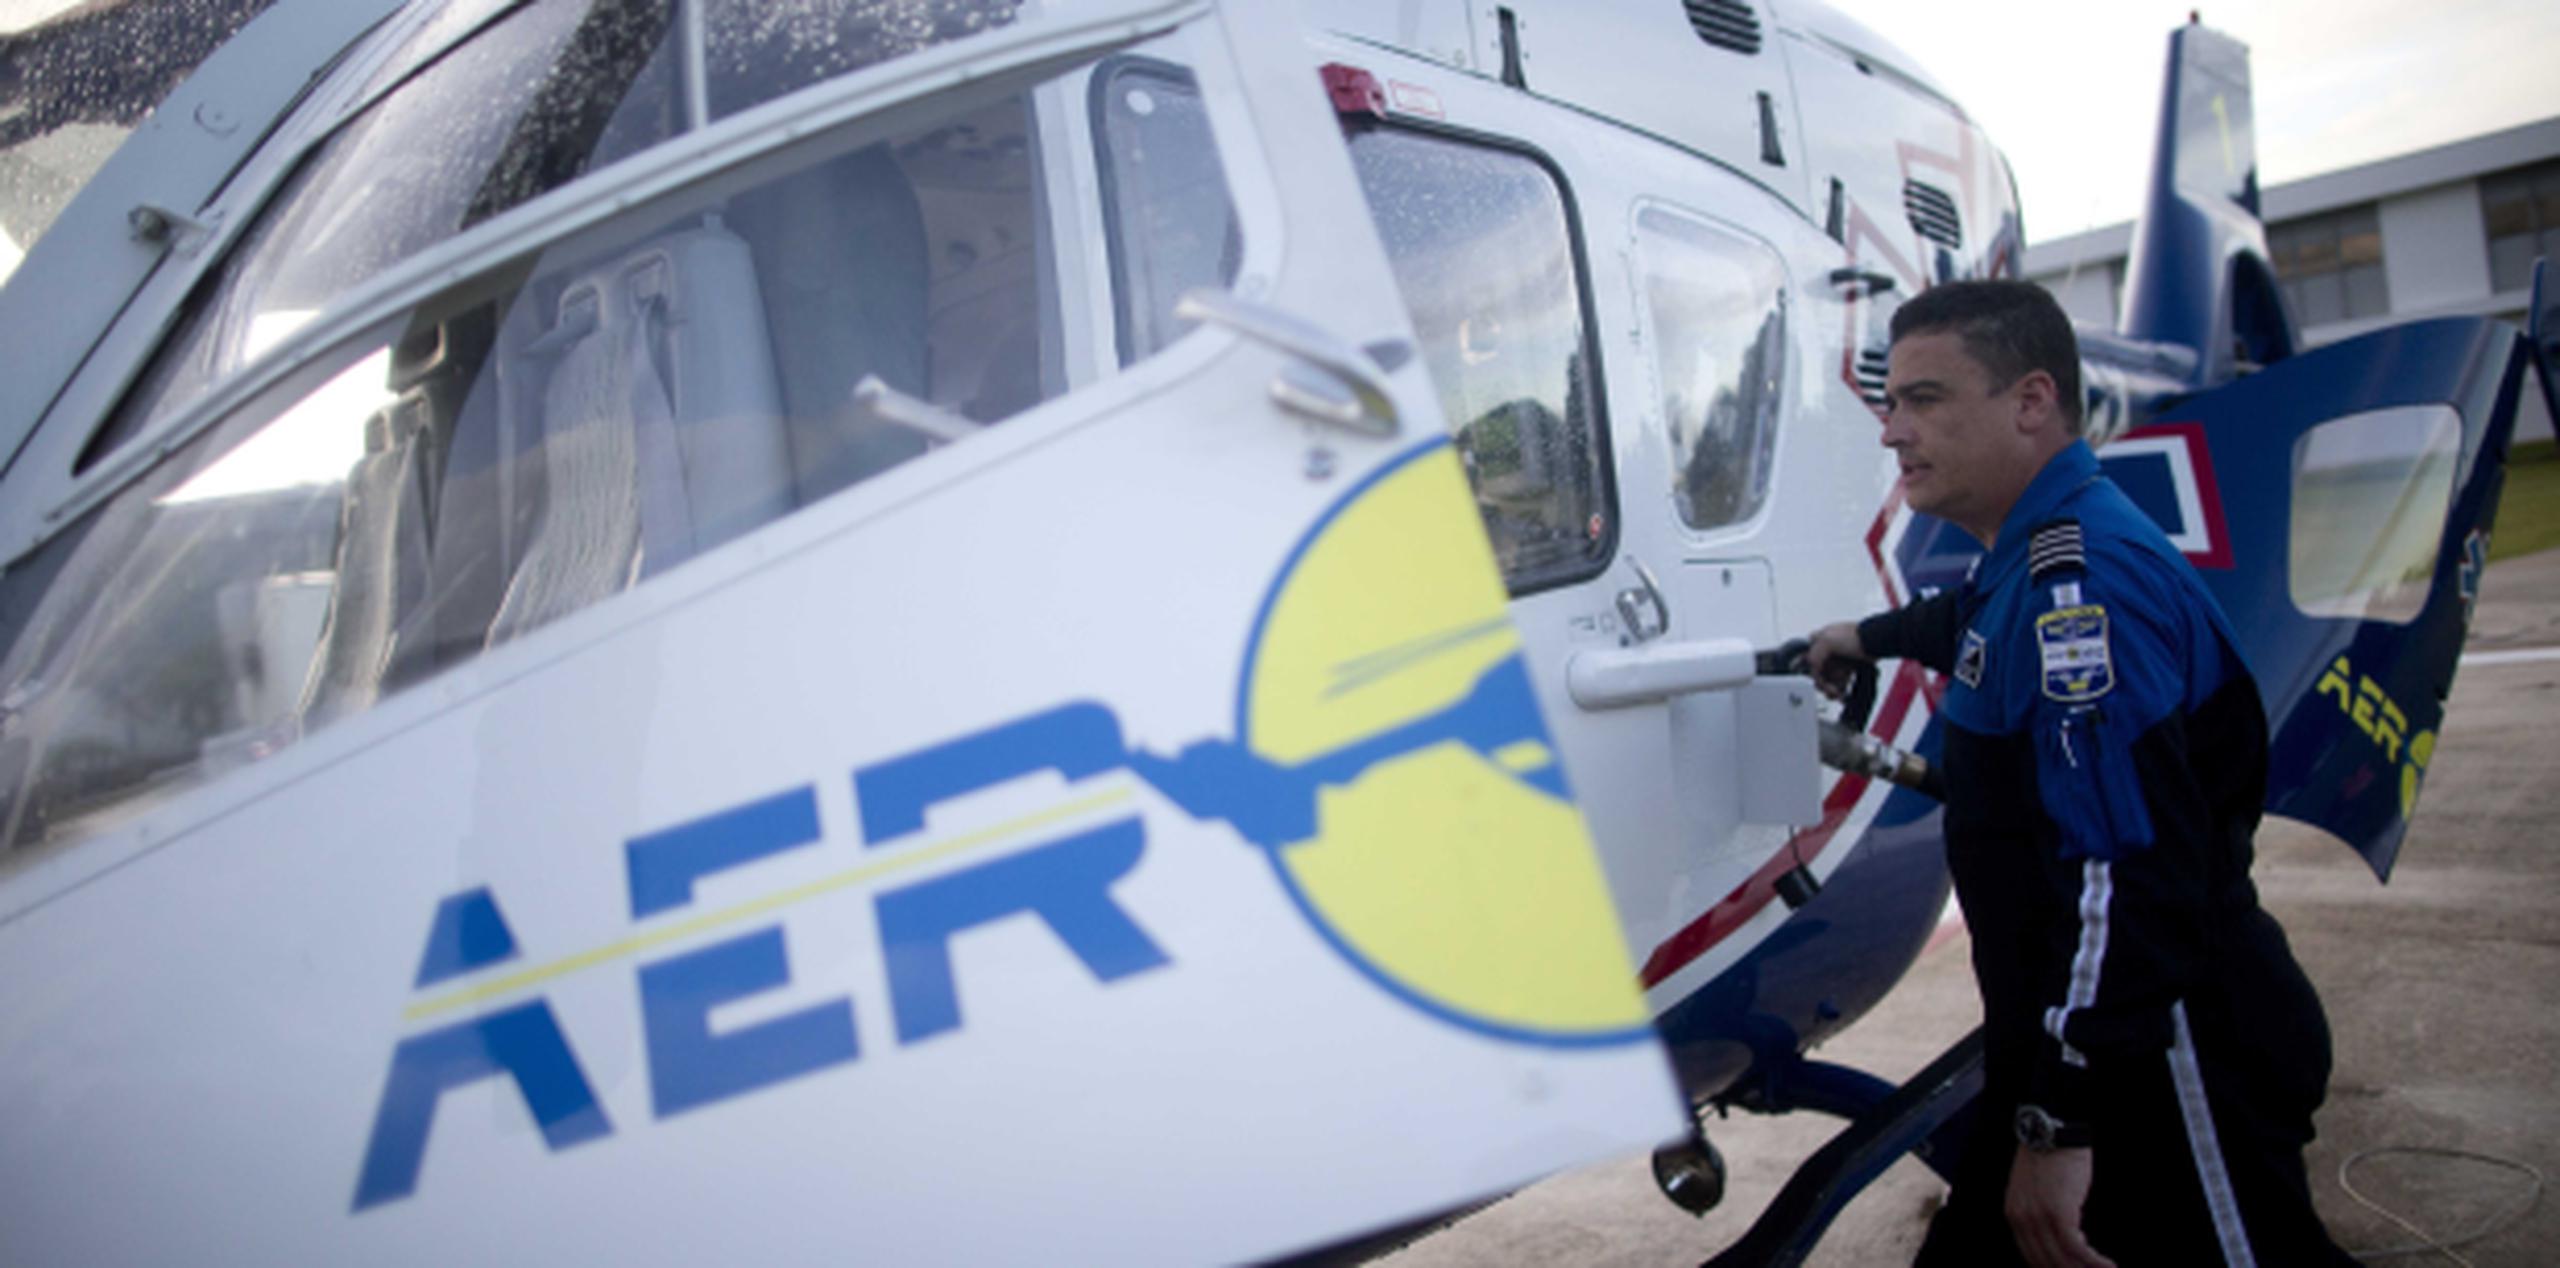 El director de Aeromed sostuvo que los servicios de ambulancia aérea se llevan a cabo a través de un estricto protocolo entre el equipo médico y que no se realizan de forma arbitraria por parte de la compañía. (Archivo)